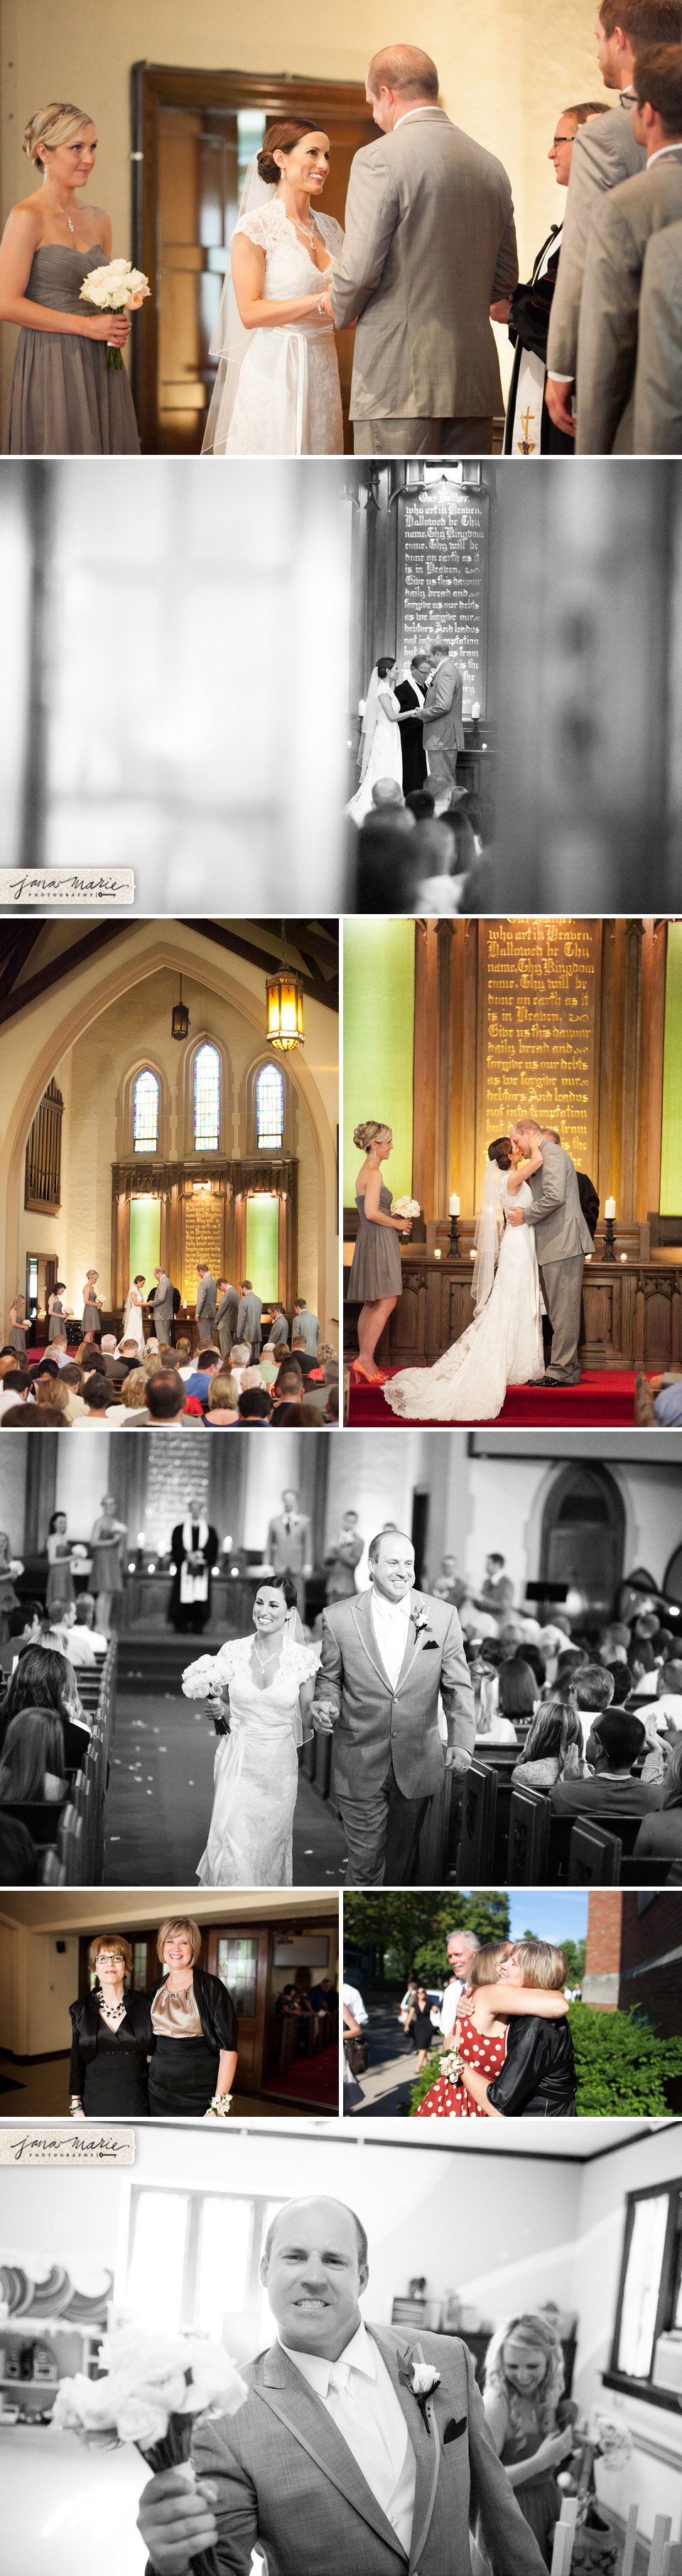 Kansas City weddings, Jacobs Well Baptist Church, church bells, family, friends, Marler